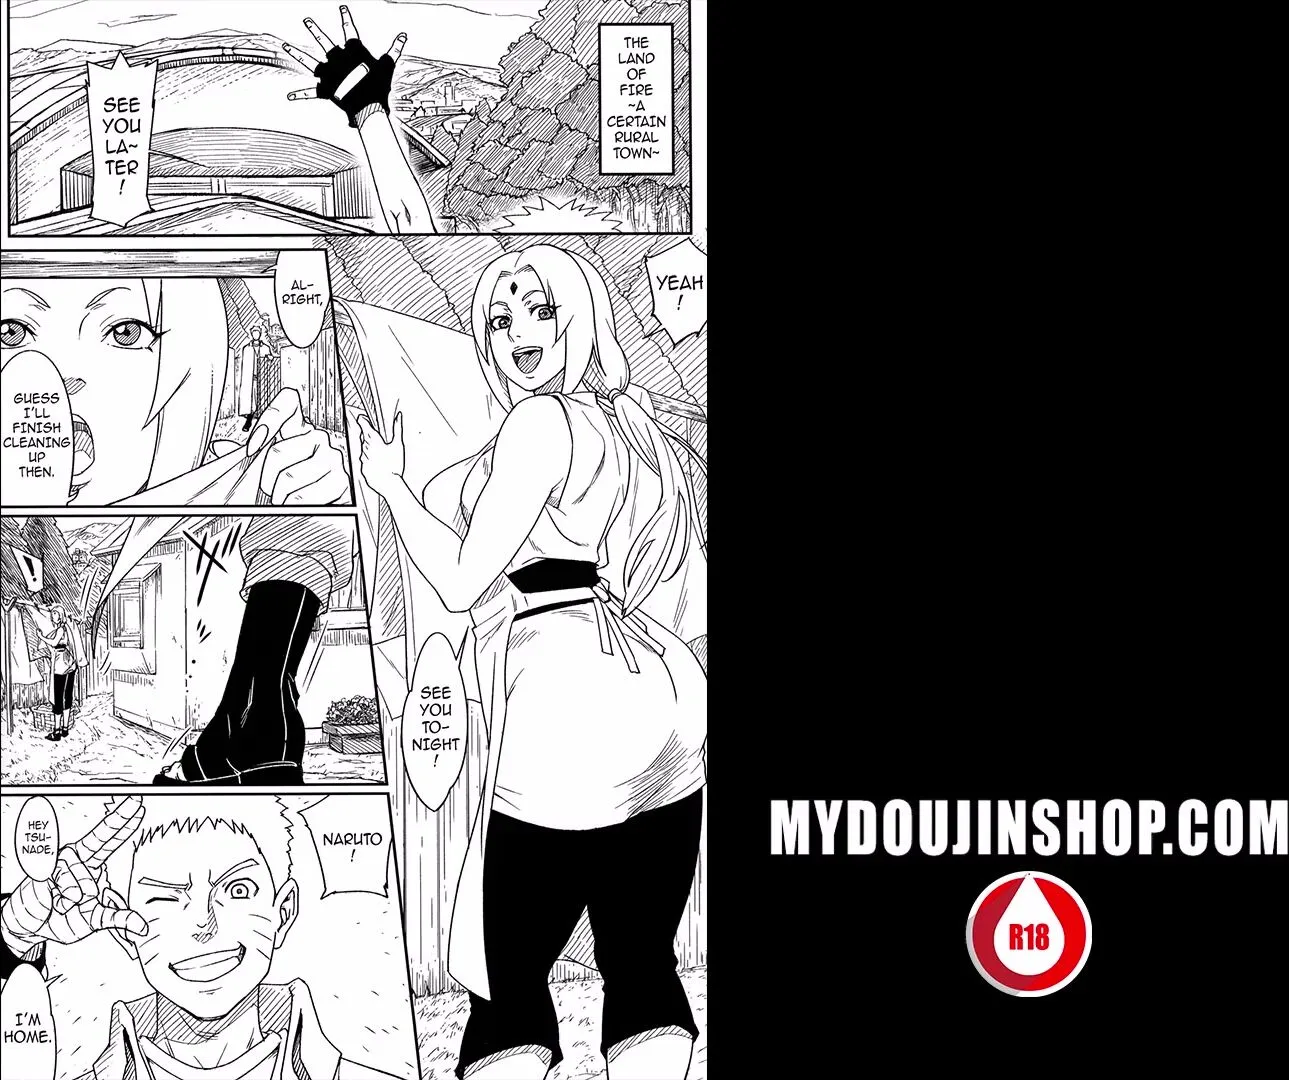 Naruto Uzumaki Porn - MyDoujinShop - Tsunade's Nip Slip Causes a Huge Boner Naruto Uzumaki Read  Anime Porn Online